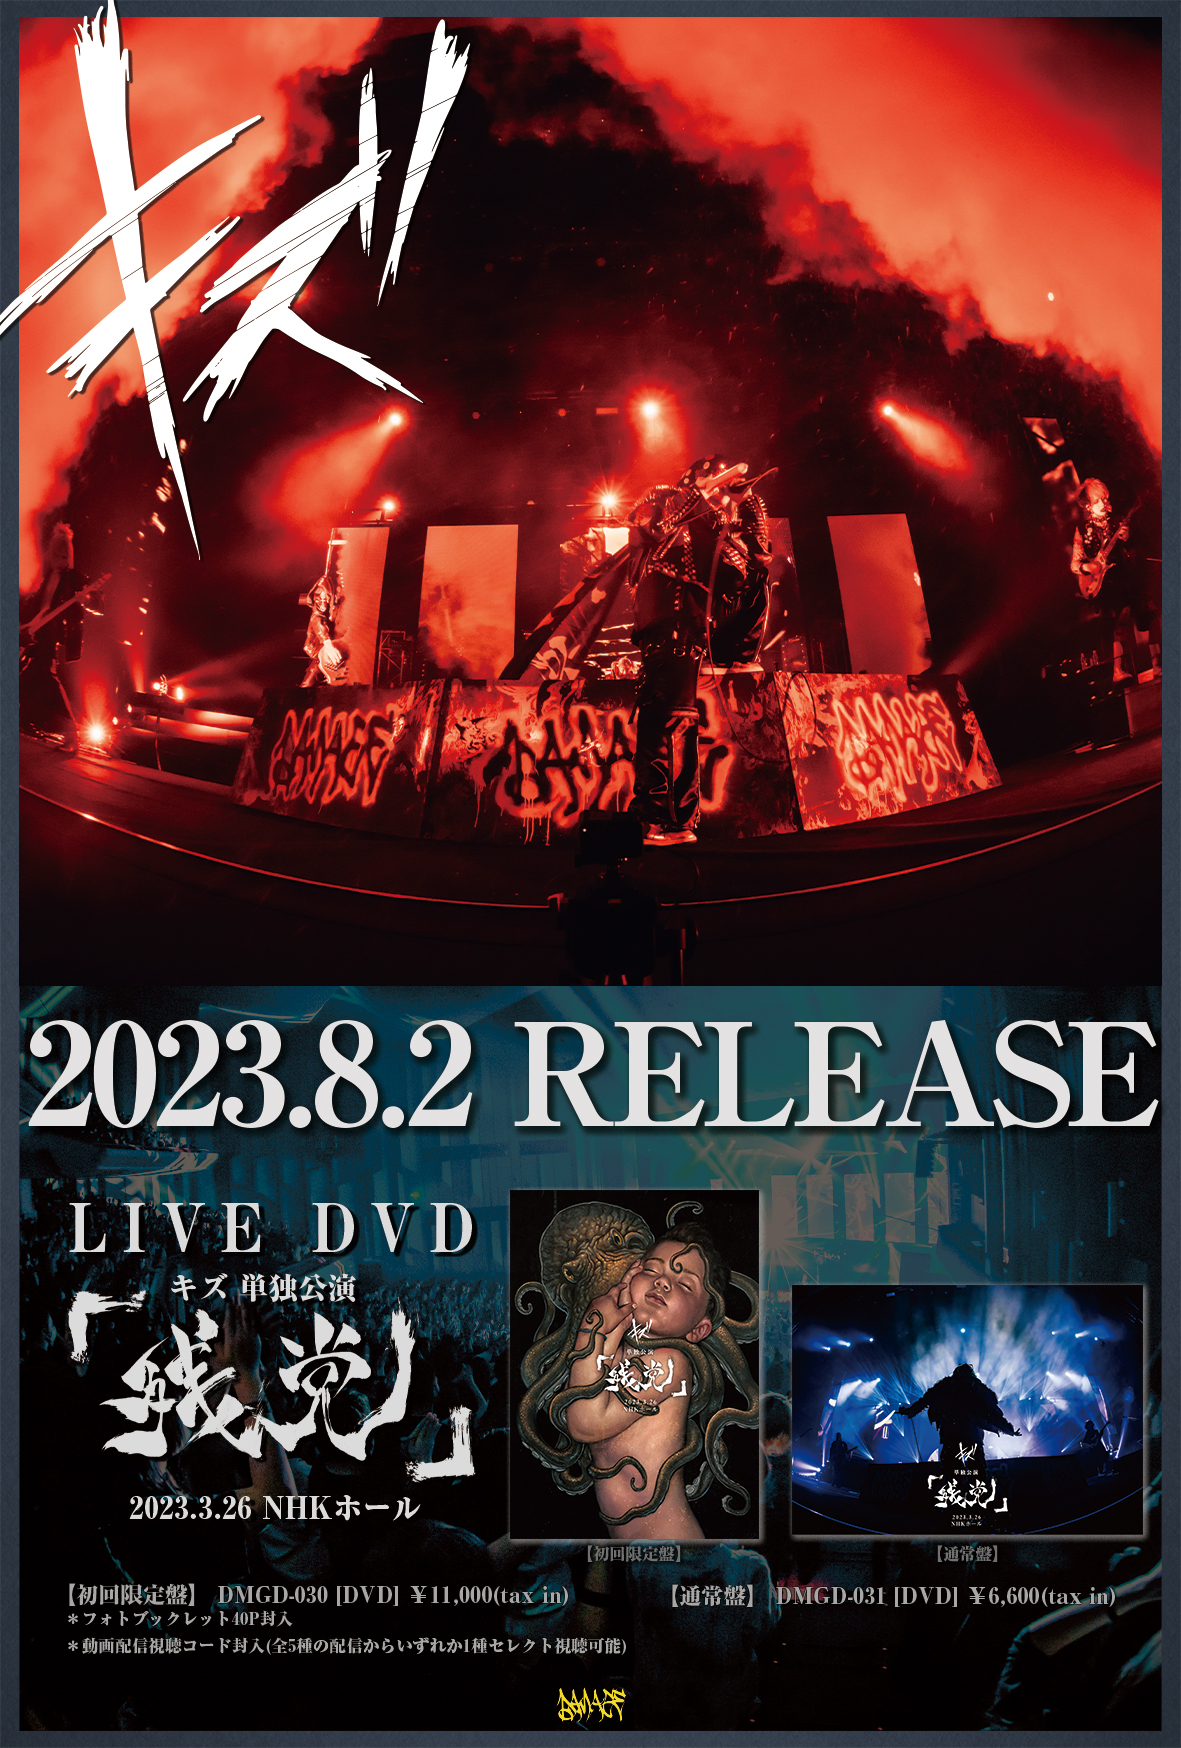 キズ LIVE DVD『4th ONEMAN さよなら』初回盤